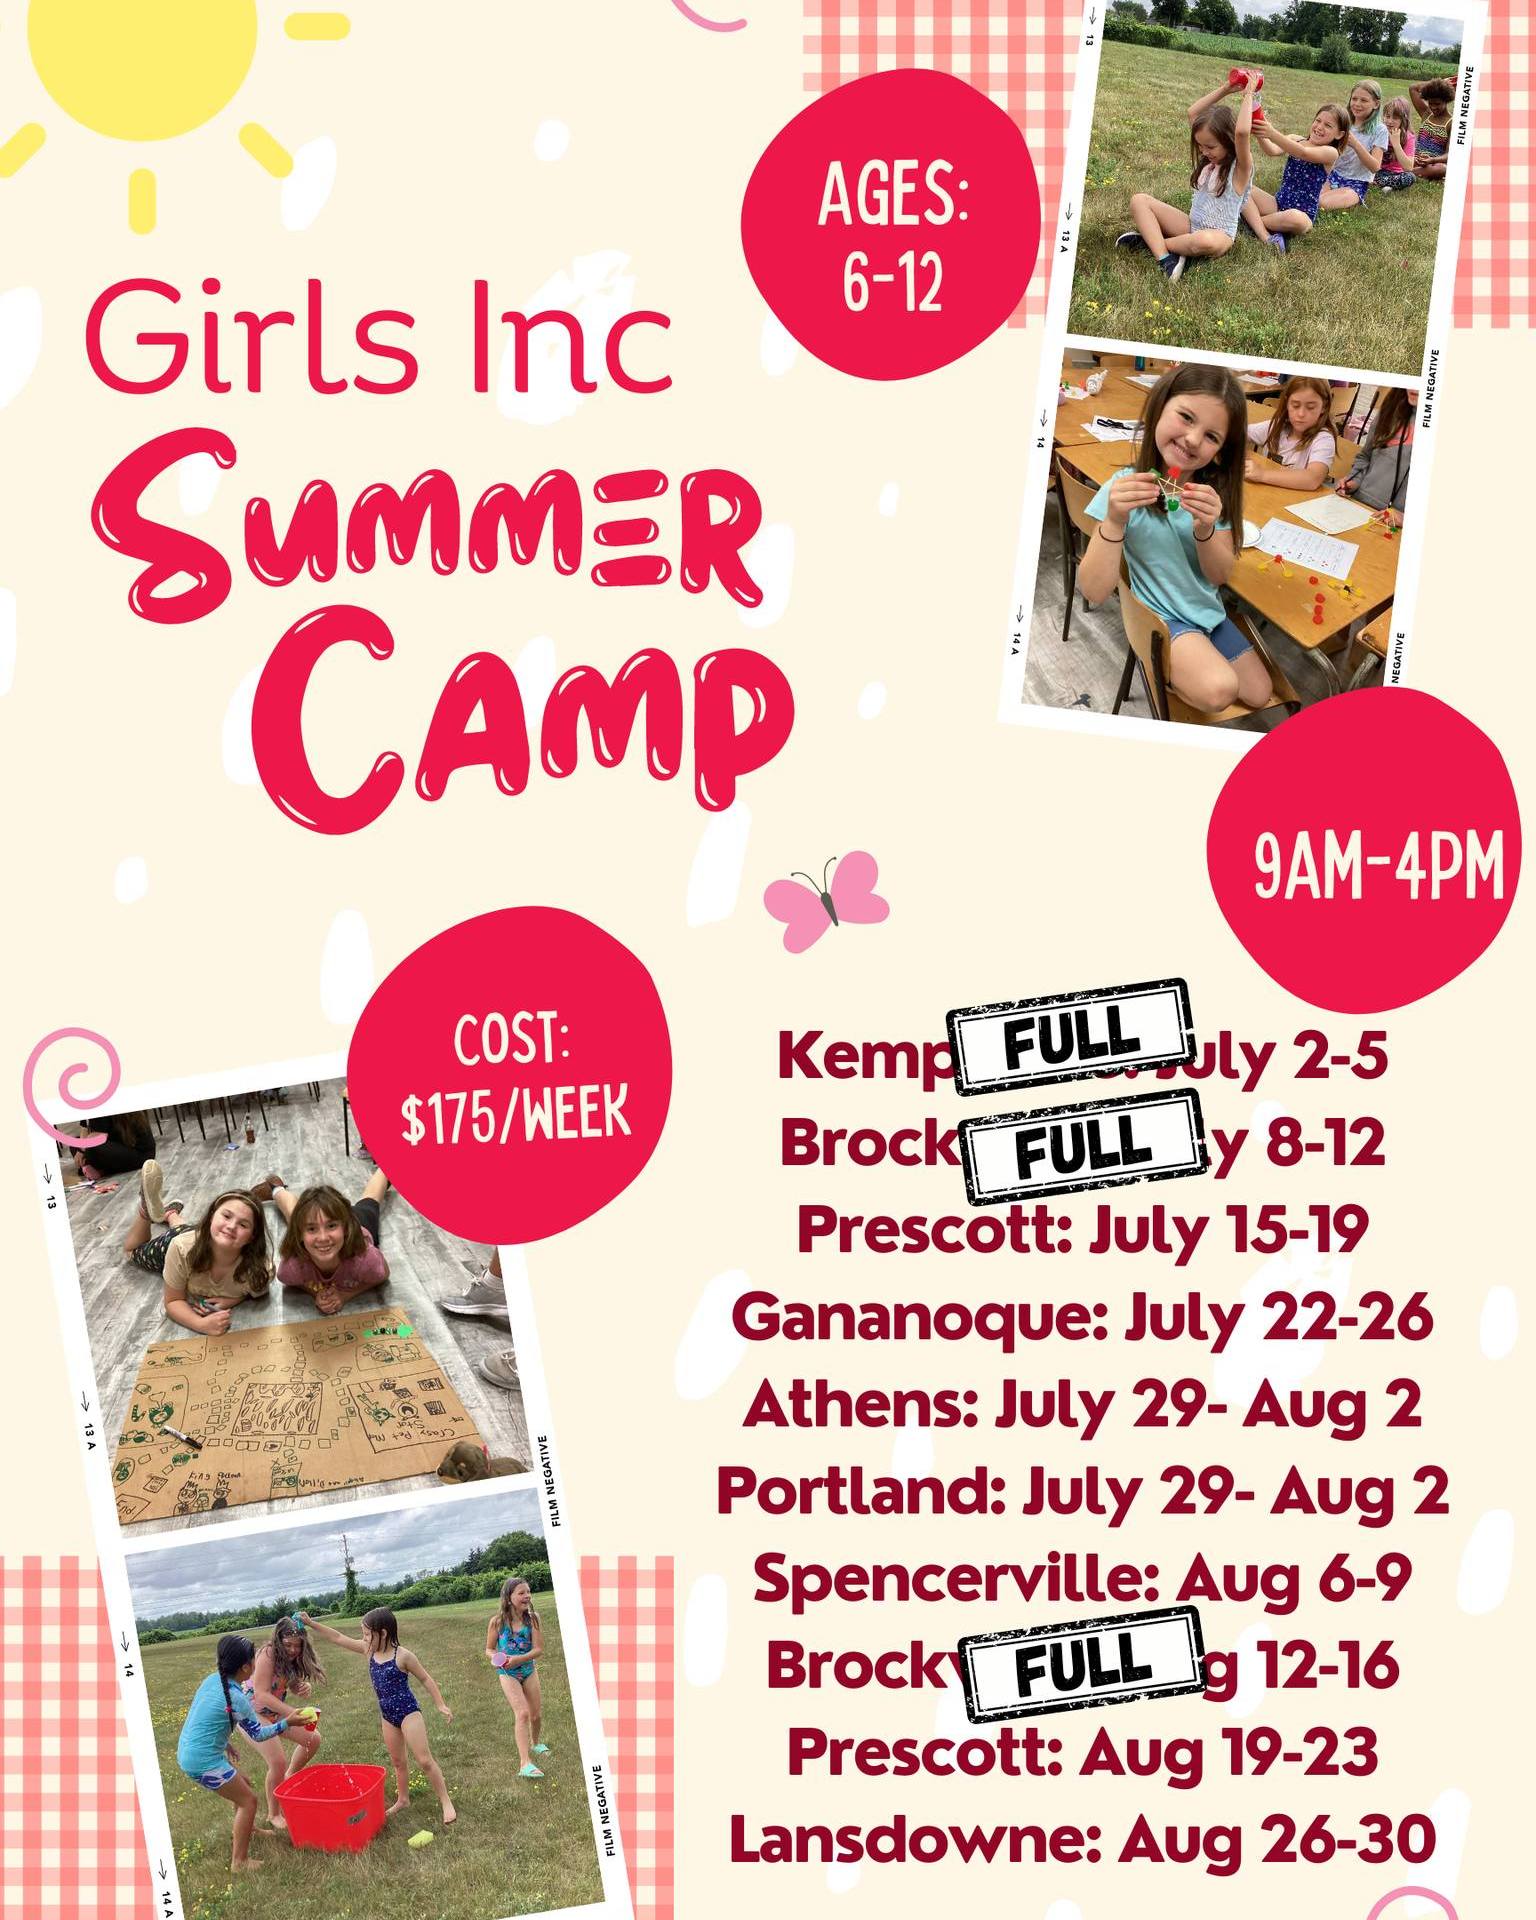 Girls Inc Summer Camp